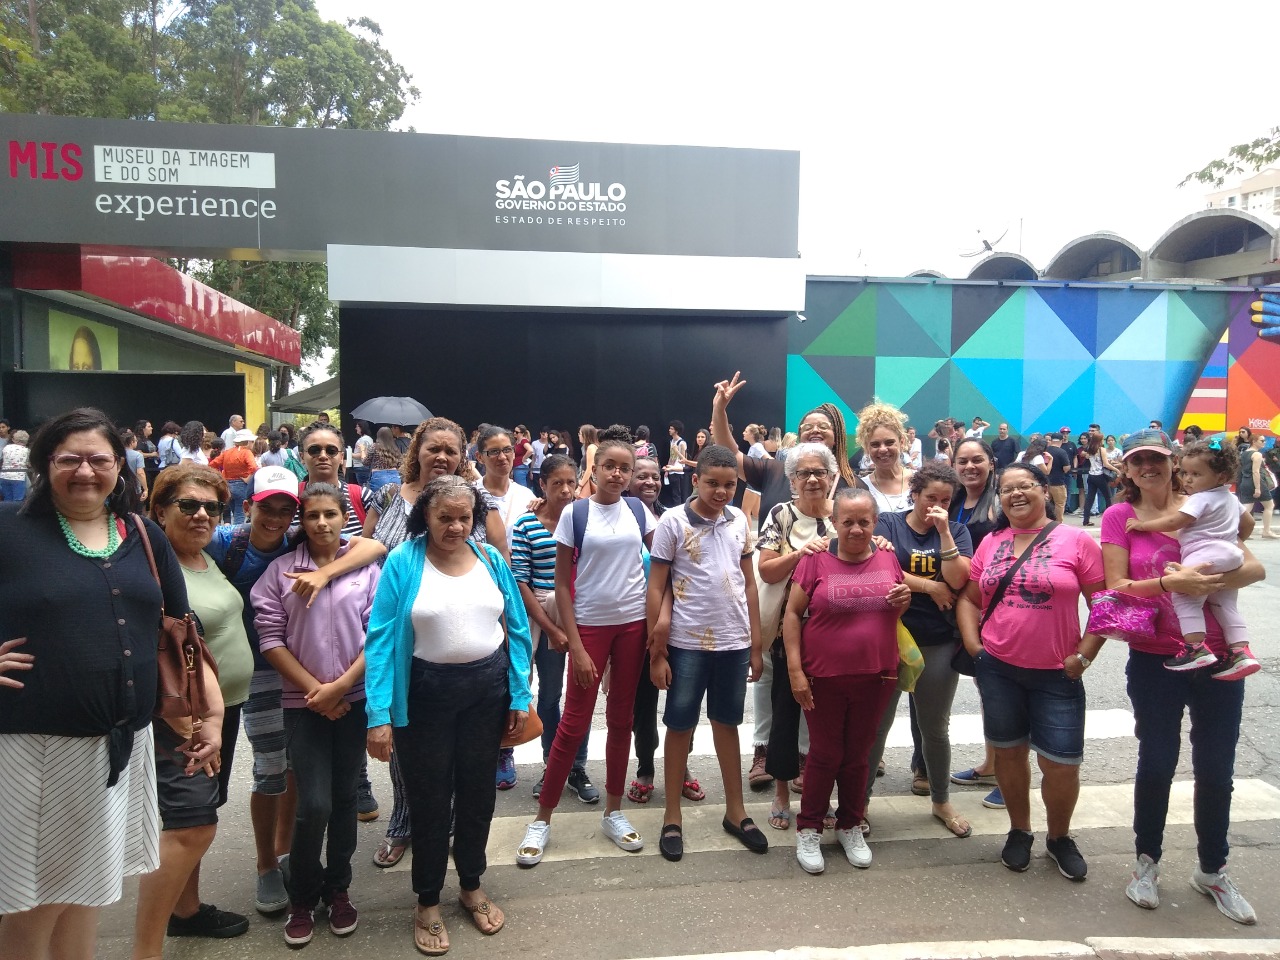 20 conviventes na frente da entrada do Museu da Imagem e do Som (IMS) Experience